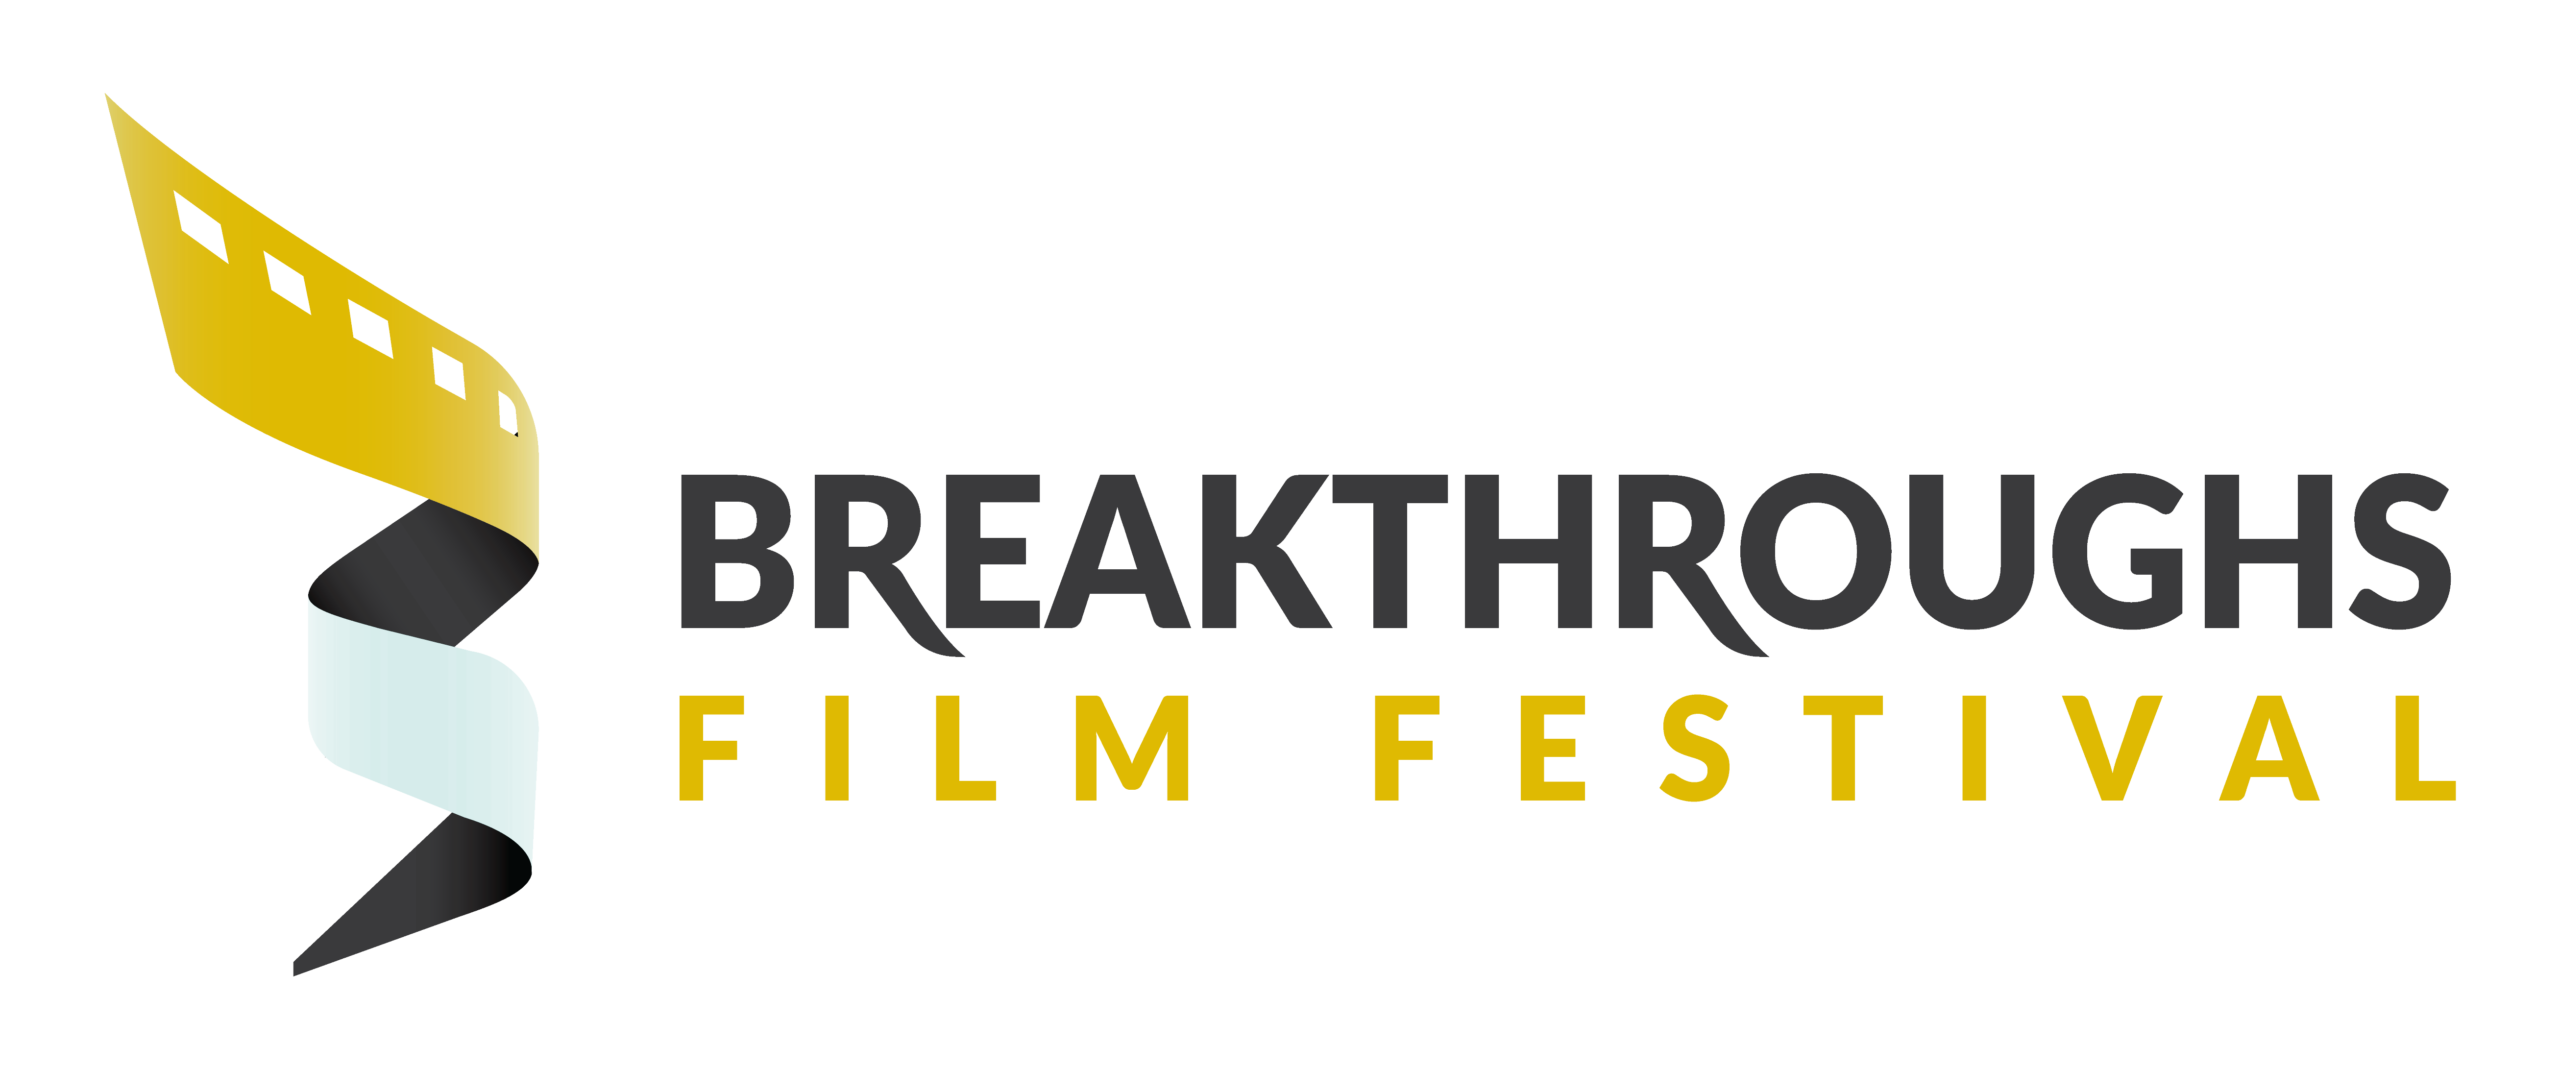 Breakthroughs Film Festival